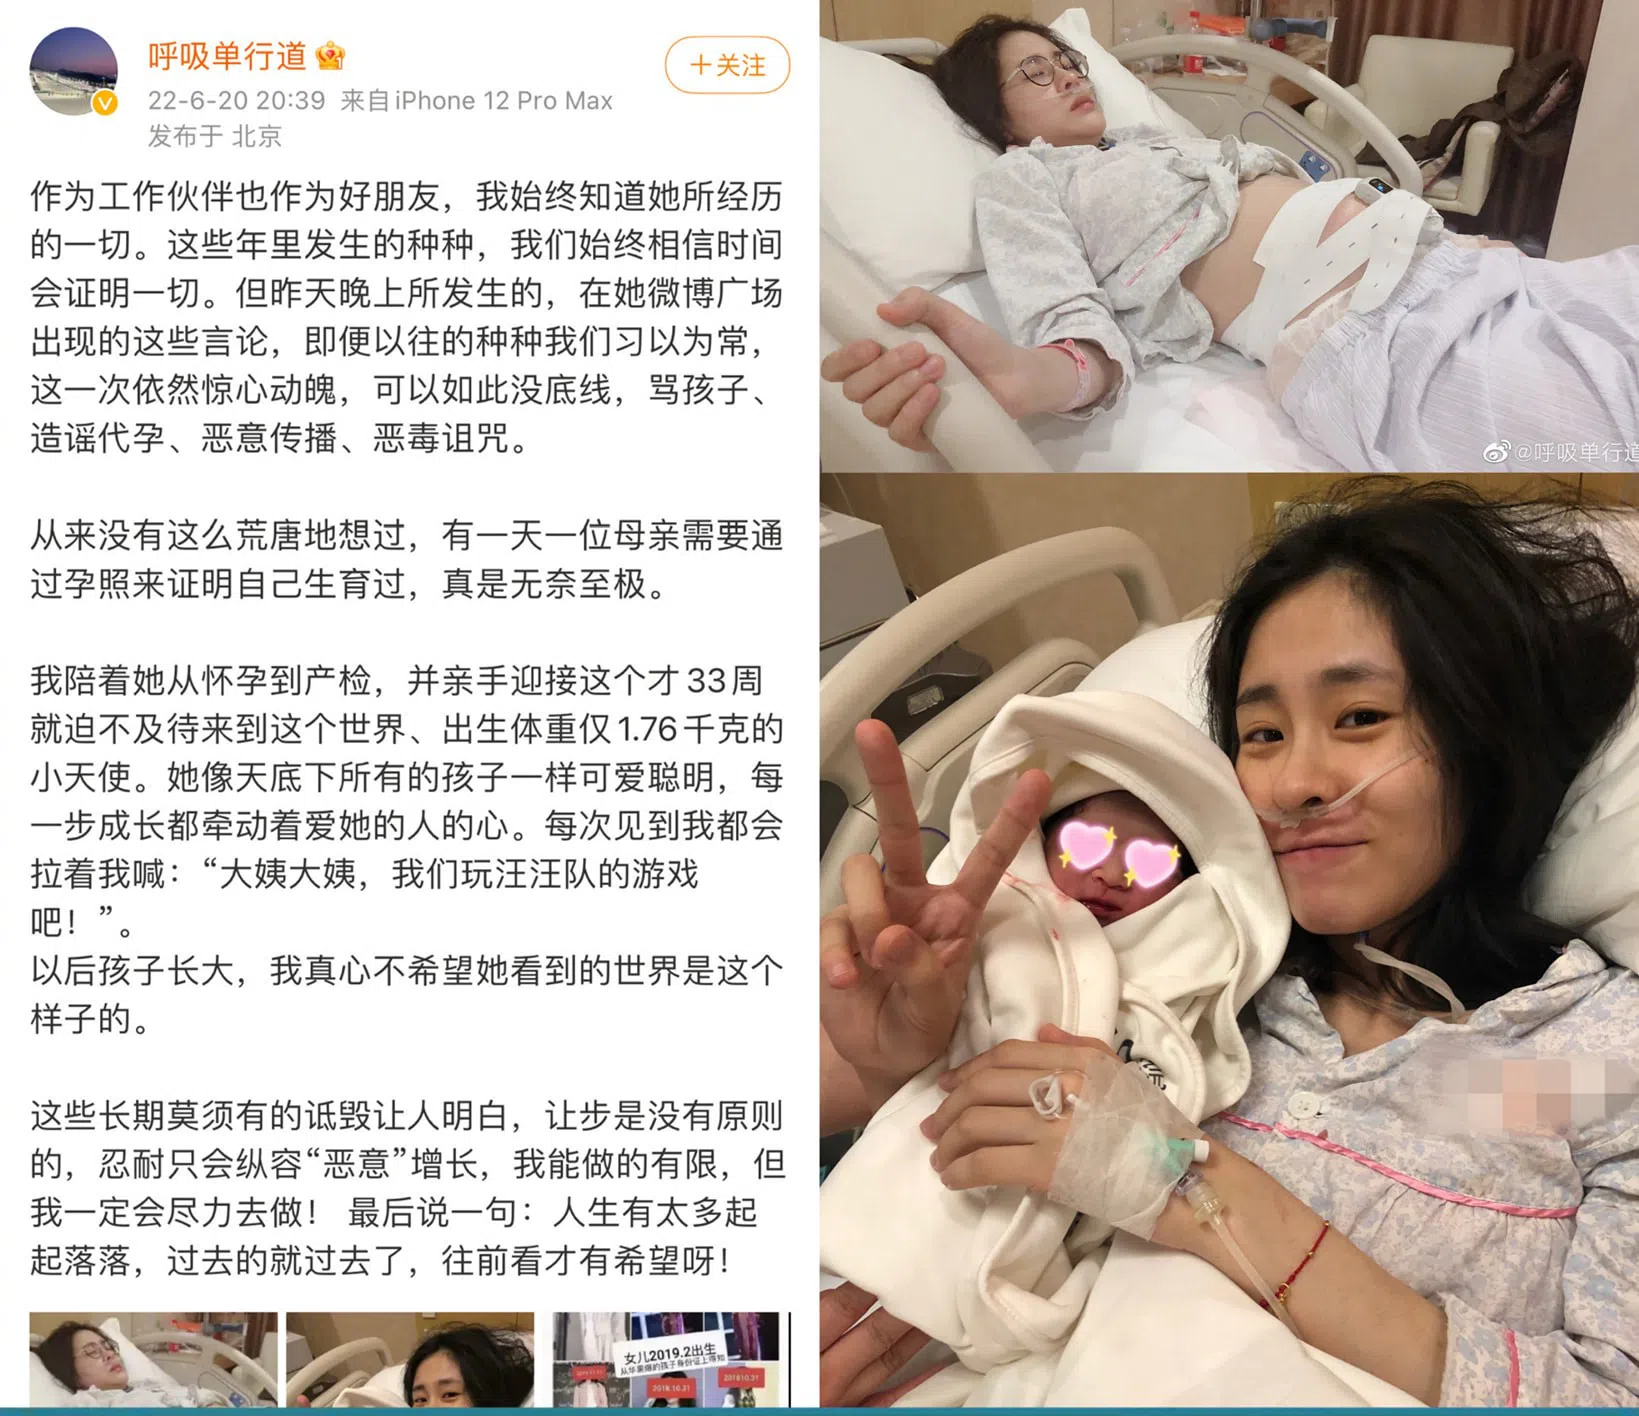 Tin nóng Cbiz ngày 21/6: Tencent chiêu thương, sao nữ sinh non, Lệ Dĩnh - Nhiệt Ba gây sốt mạng xã hội